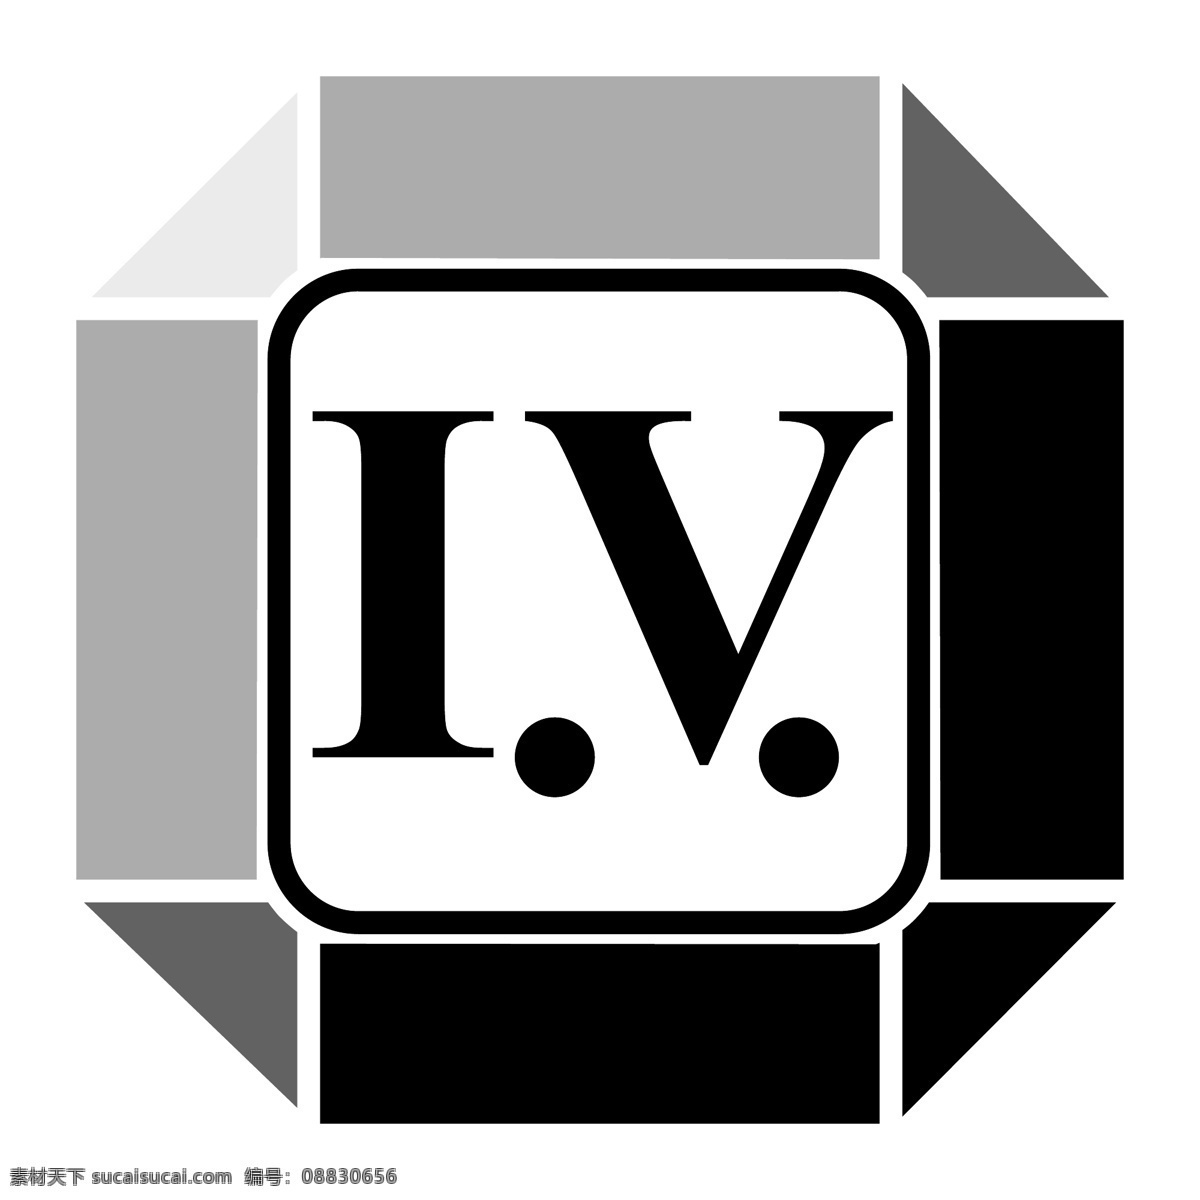 标志设计 卡尔四世 向量的标志 没有iv iv iv矢量标志 iv向量 向量iv iv设计 四处 向量的办公室 标志的iv 向量 尼康 coolscan 矢量图 建筑家居